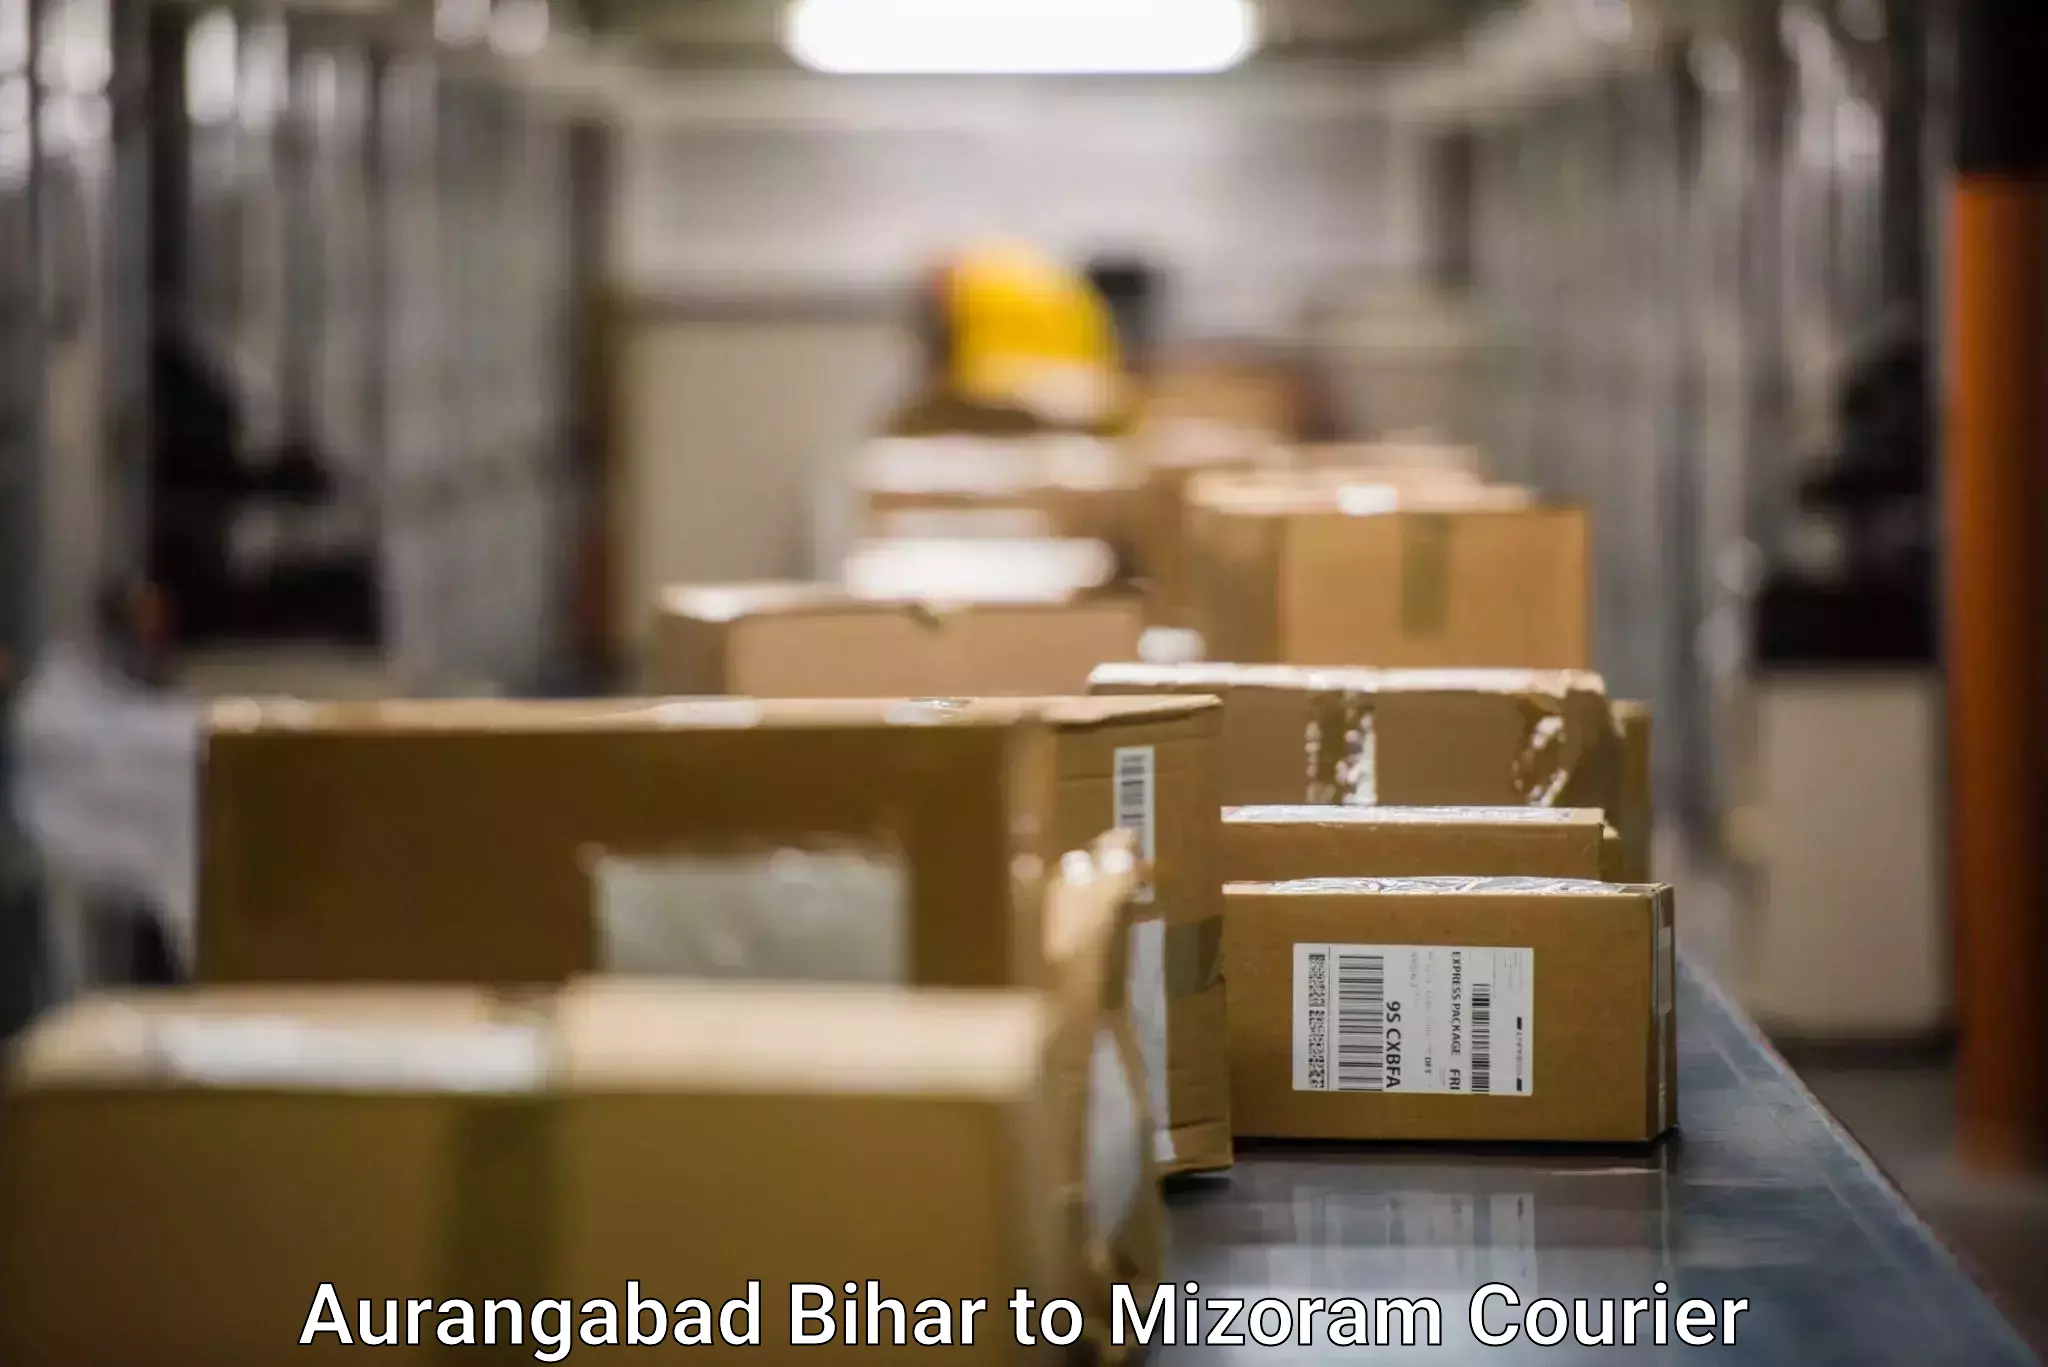 Cost-effective courier solutions Aurangabad Bihar to Mizoram